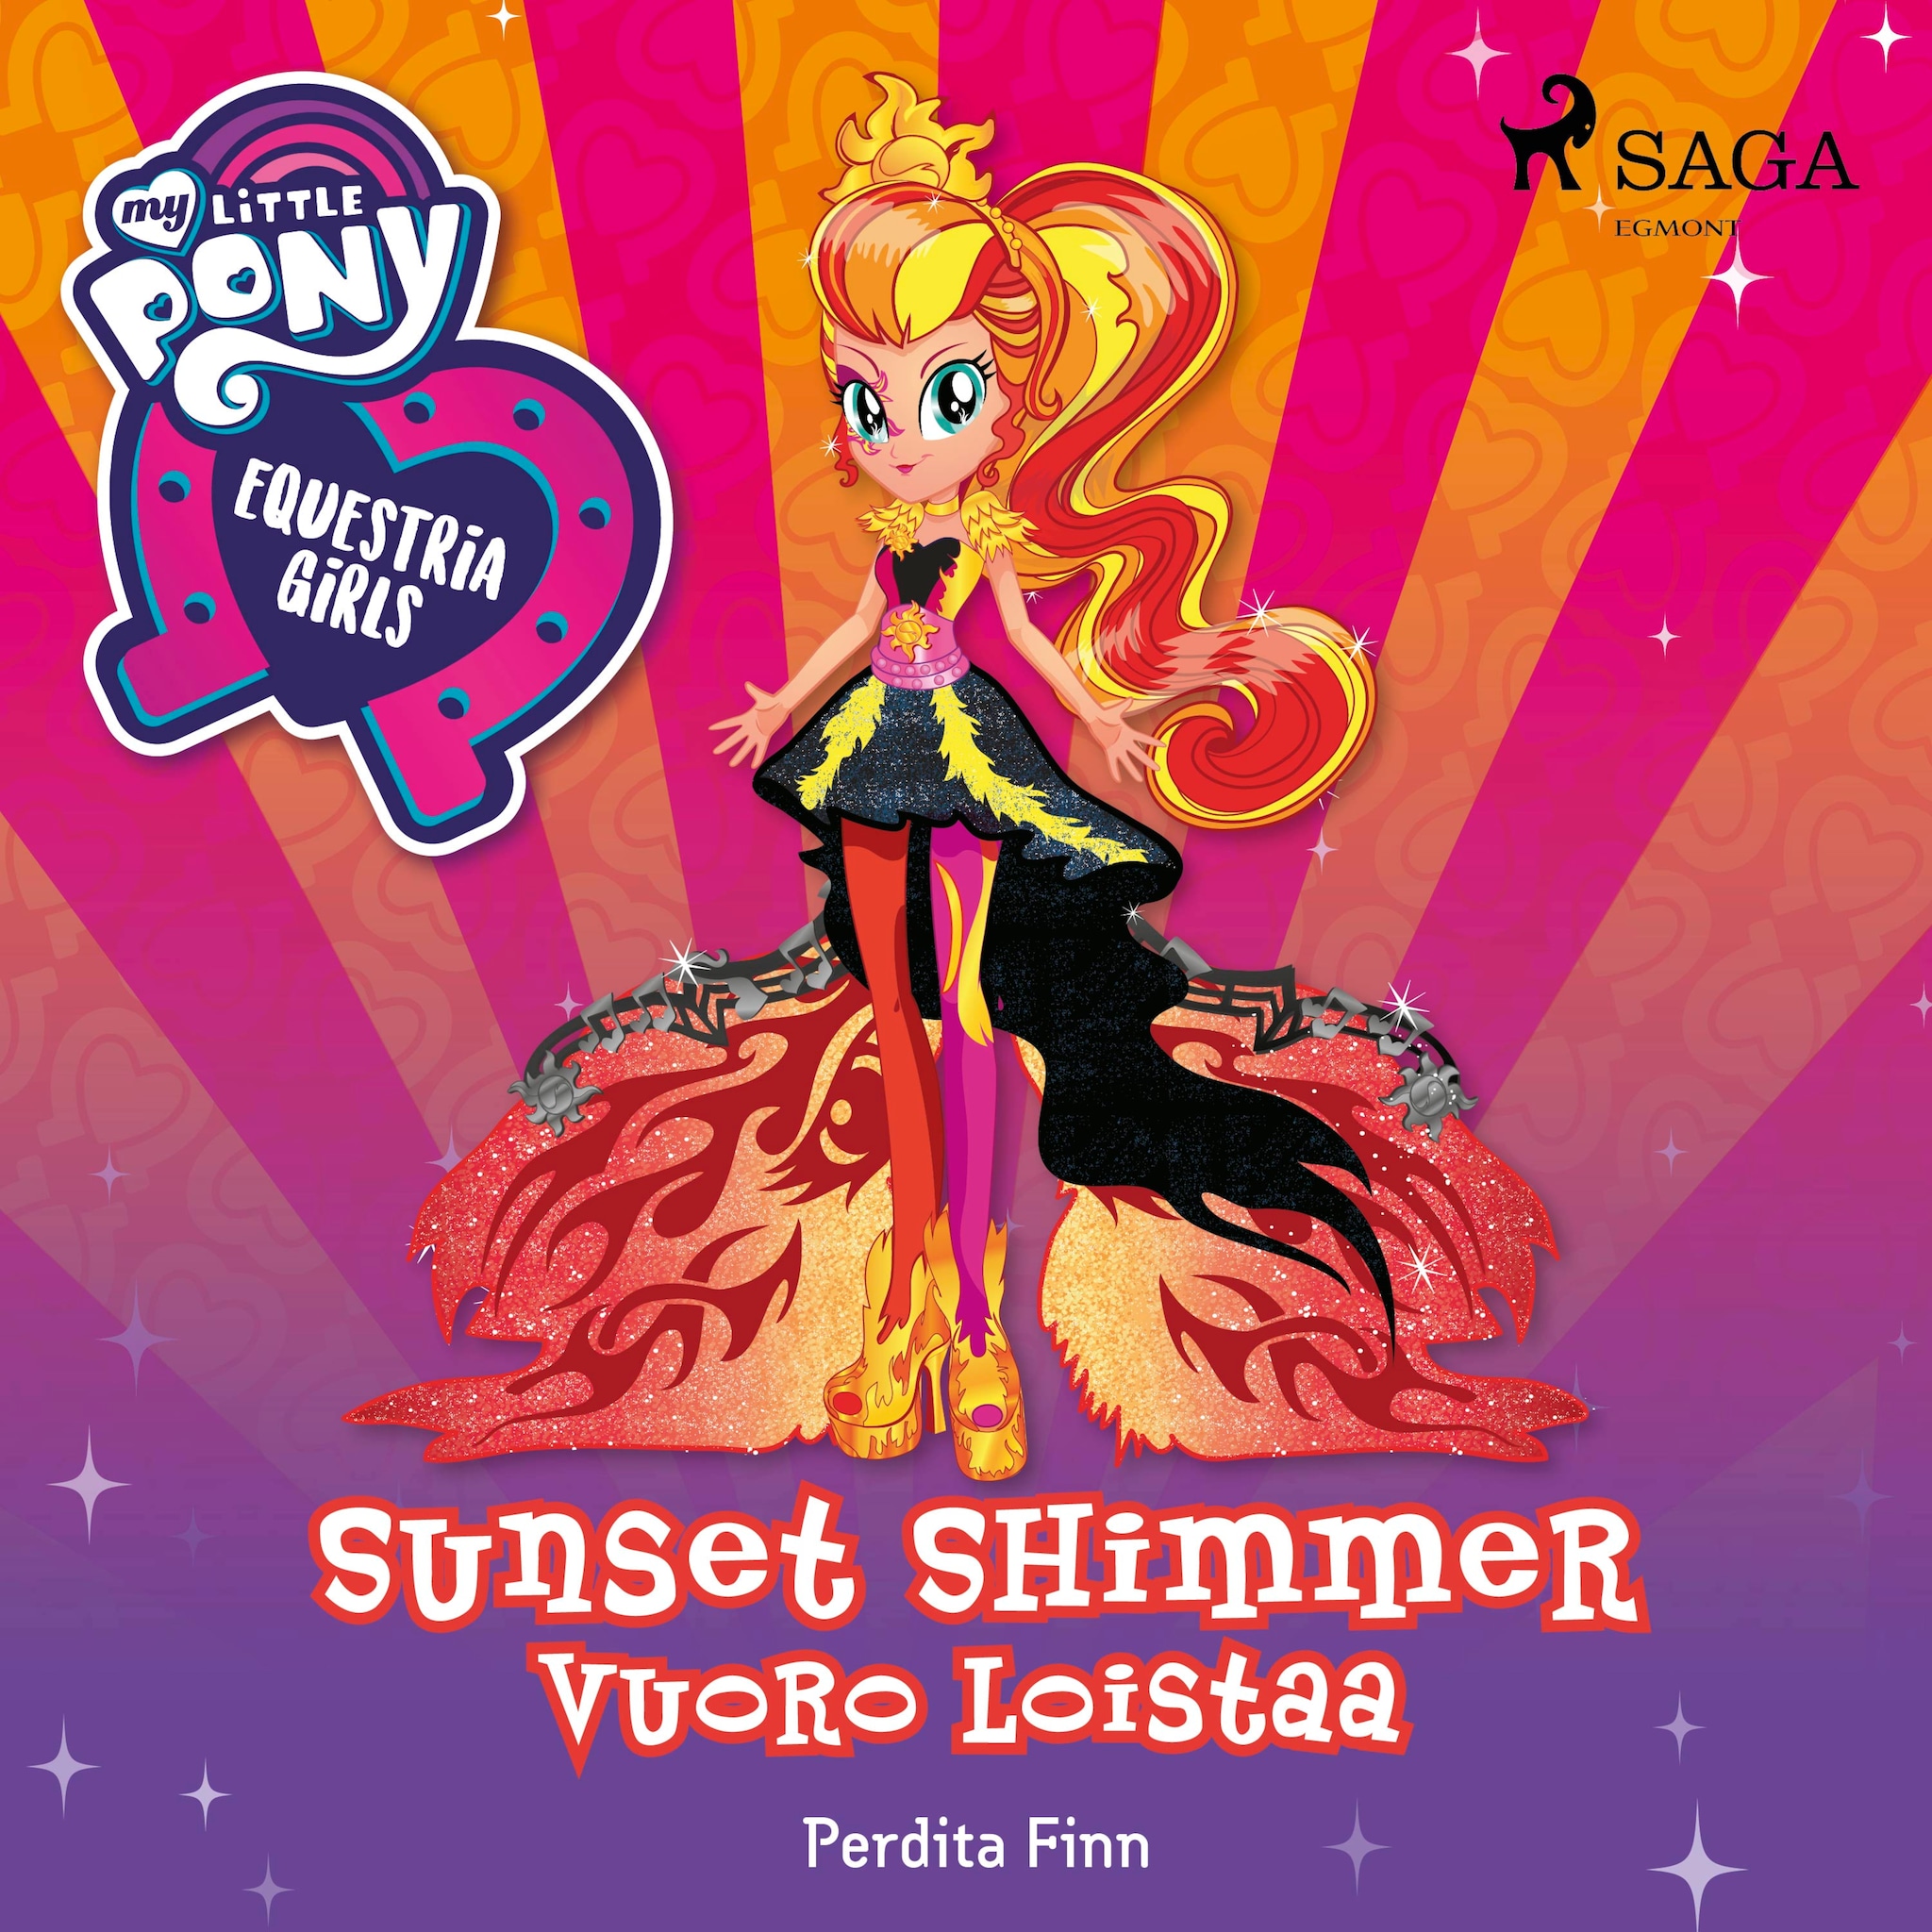 My Little Pony – Equestria Girls – Sunset Shimmerin vuoro loistaa ilmaiseksi